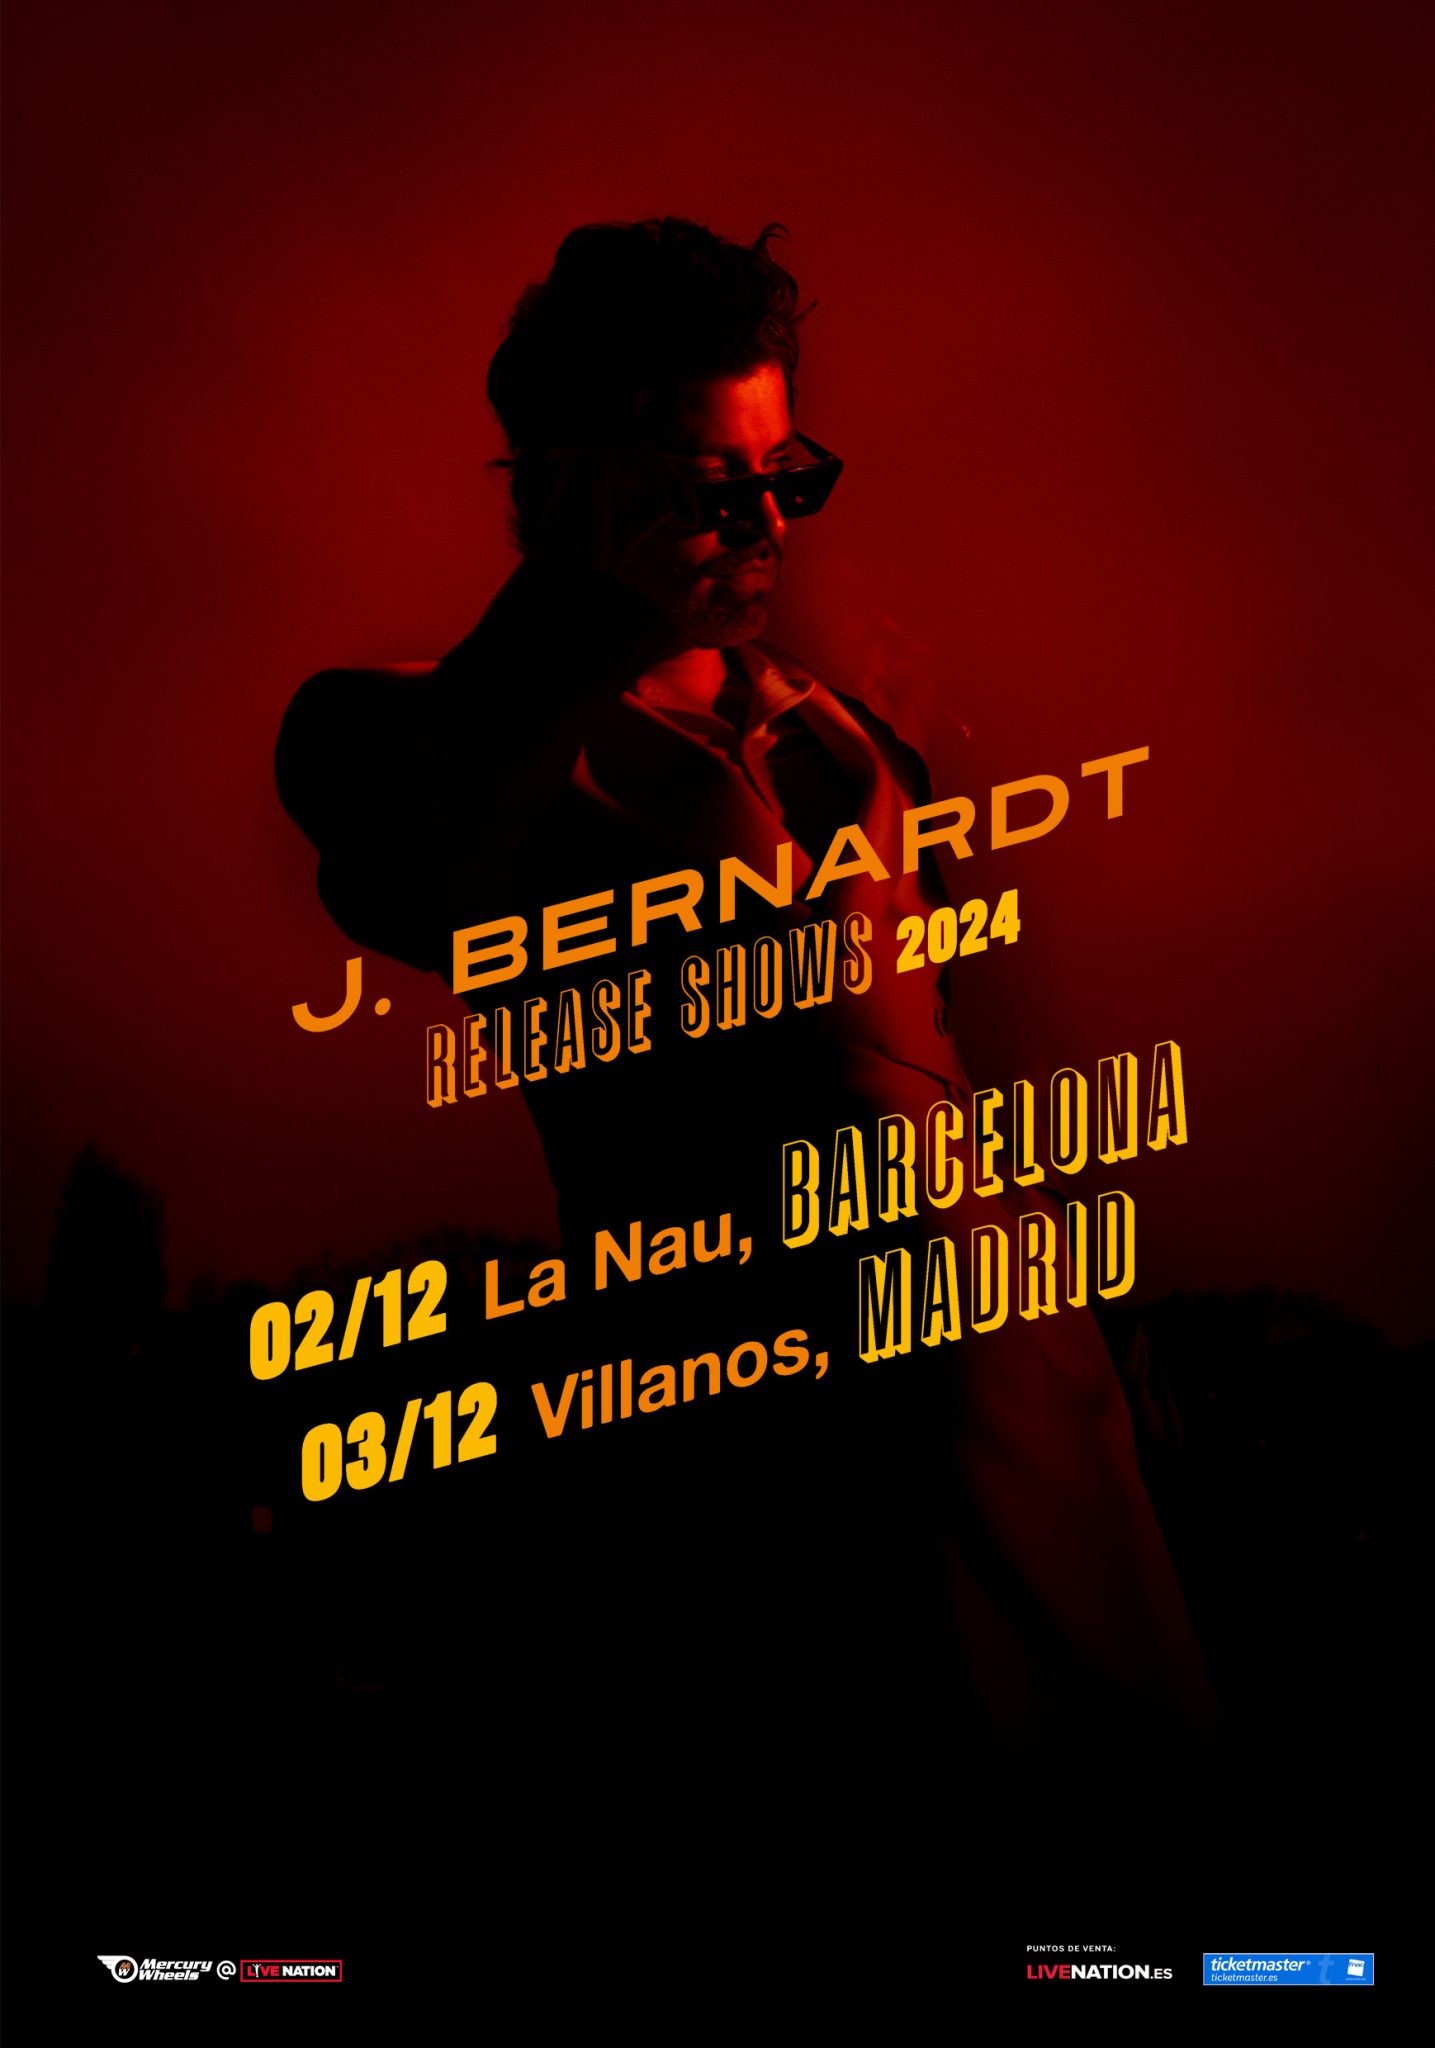 J Bernardt espana 2024